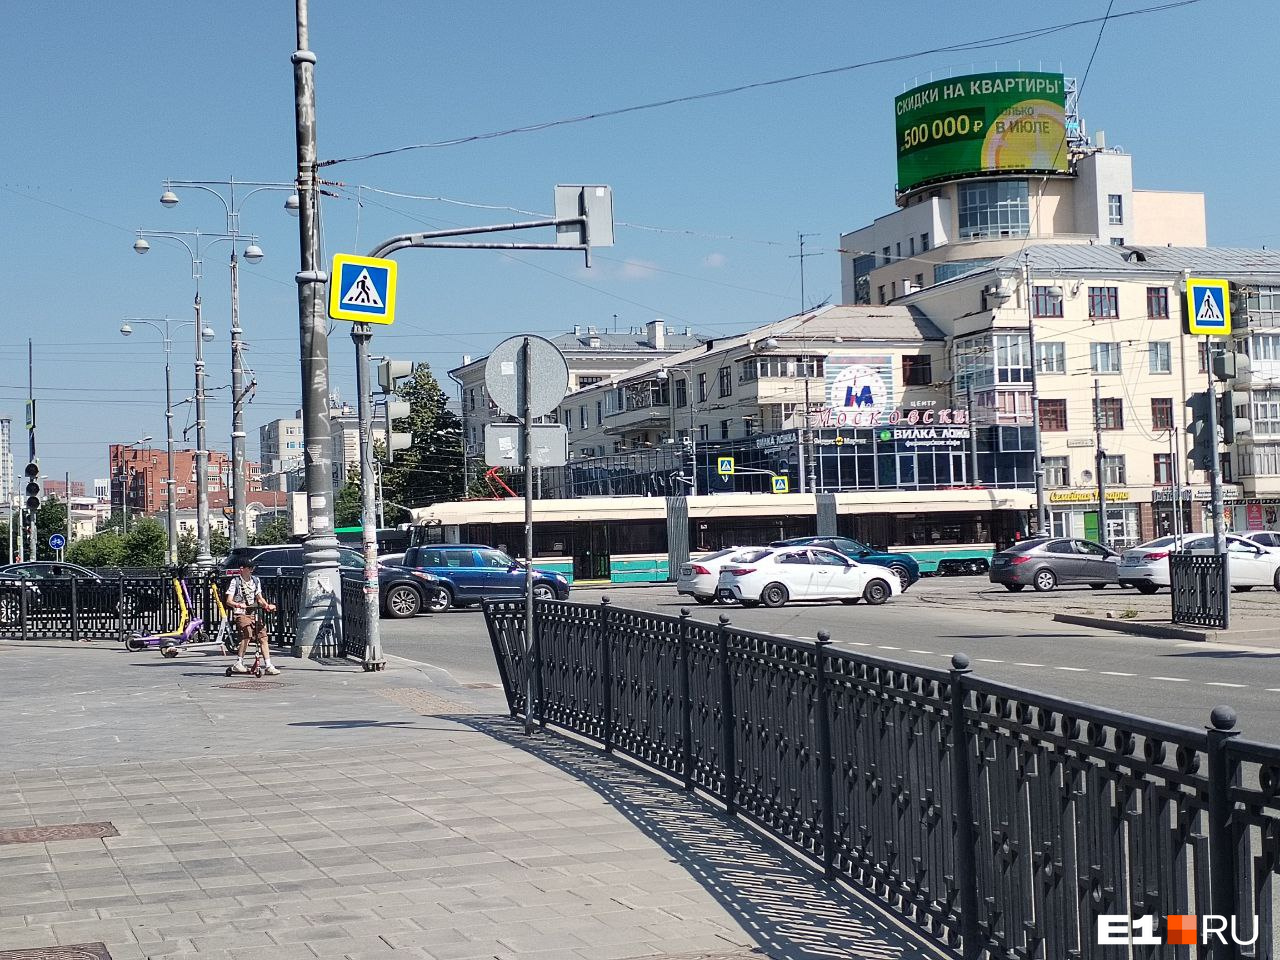 В Екатеринбурге заметили редкий ретротрамвай. Как на нем прокатиться?